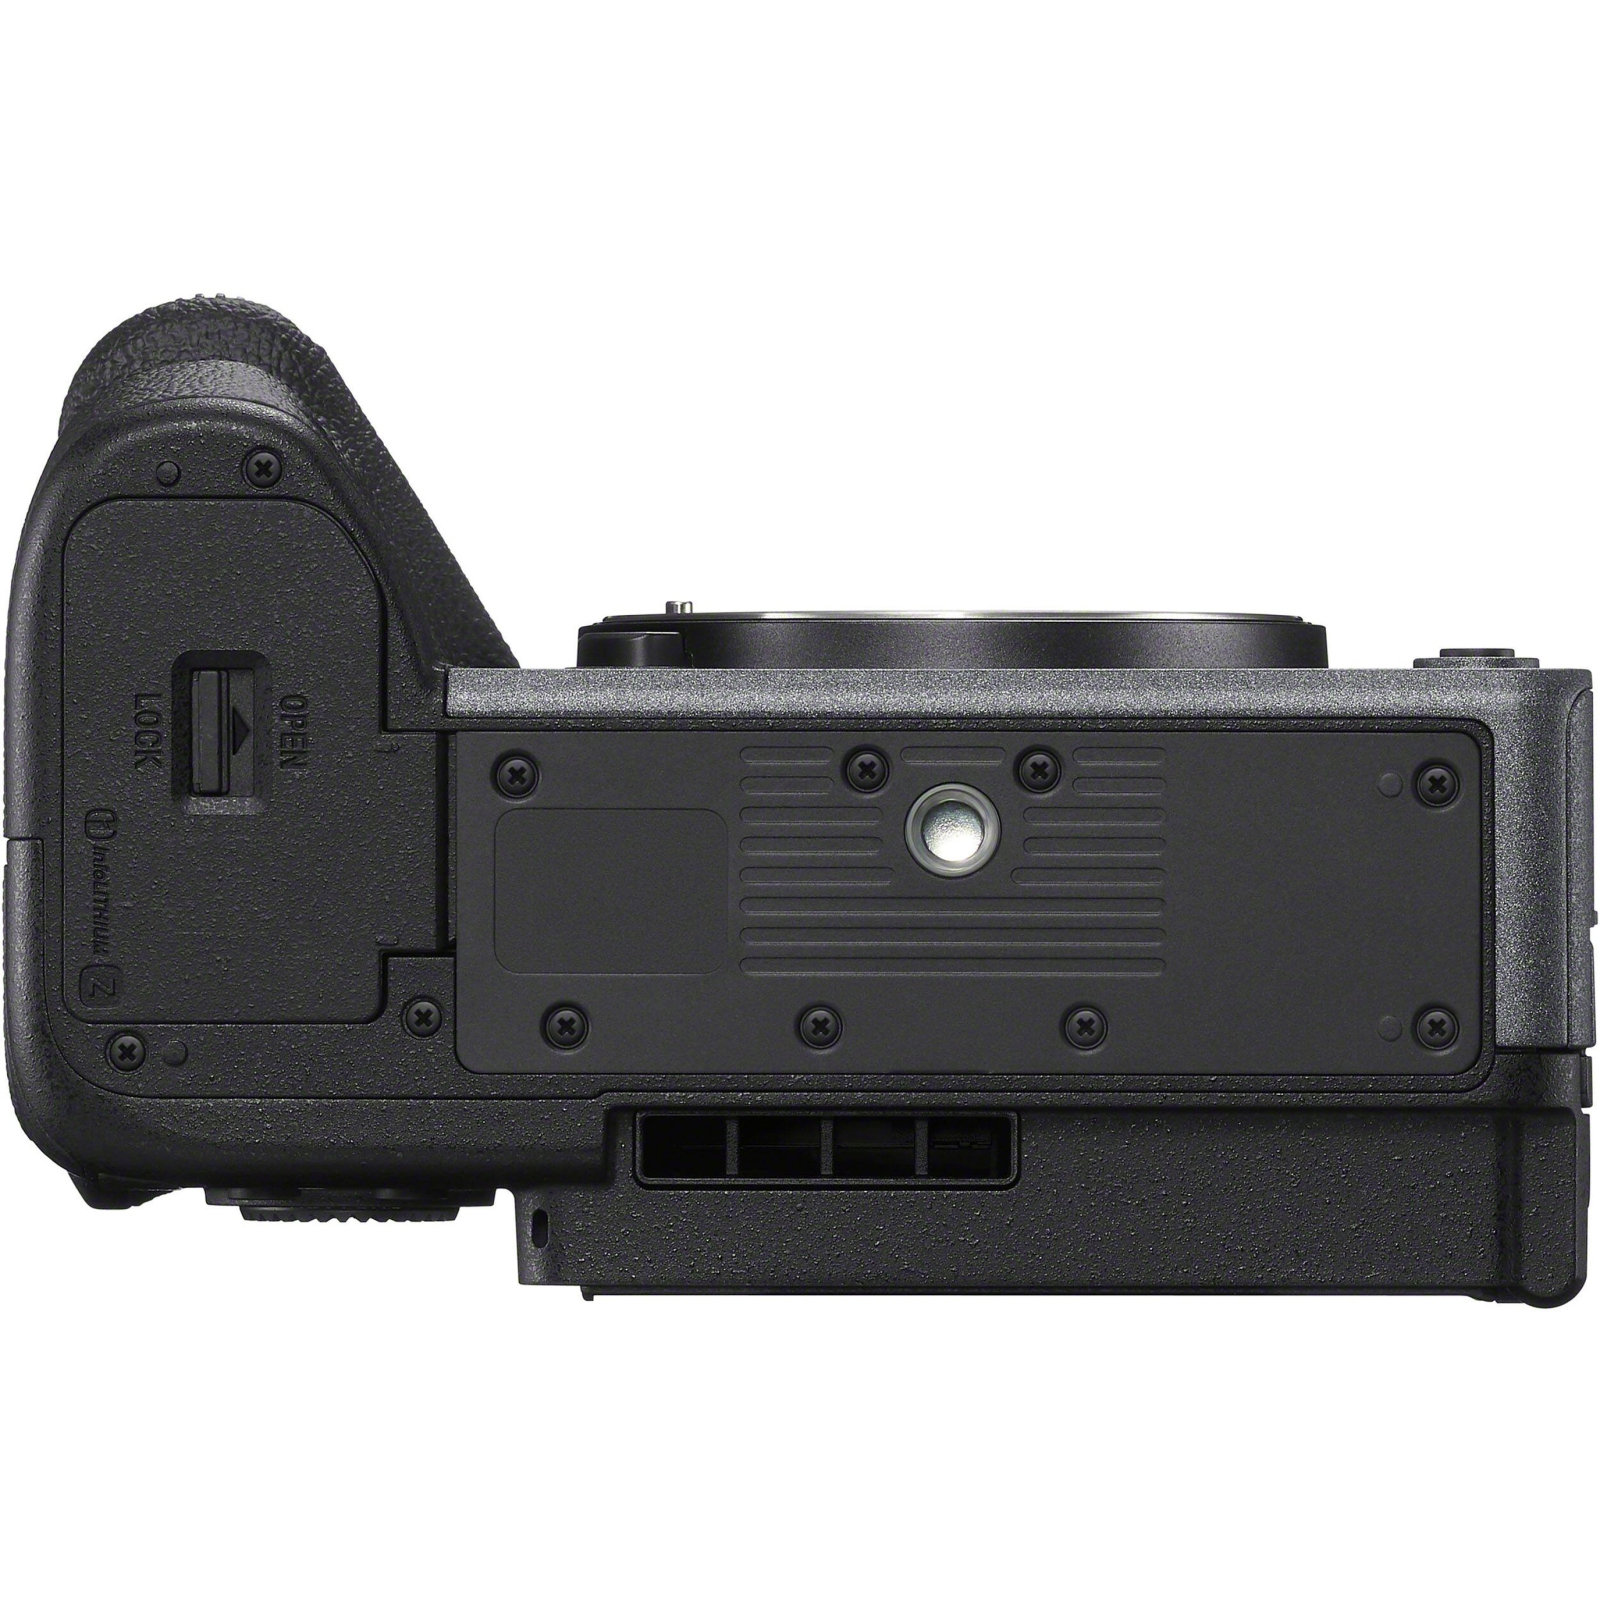 Цифровая видеокамера Sony FX30 Body (ILMEFX30B.CEC) изображение 7